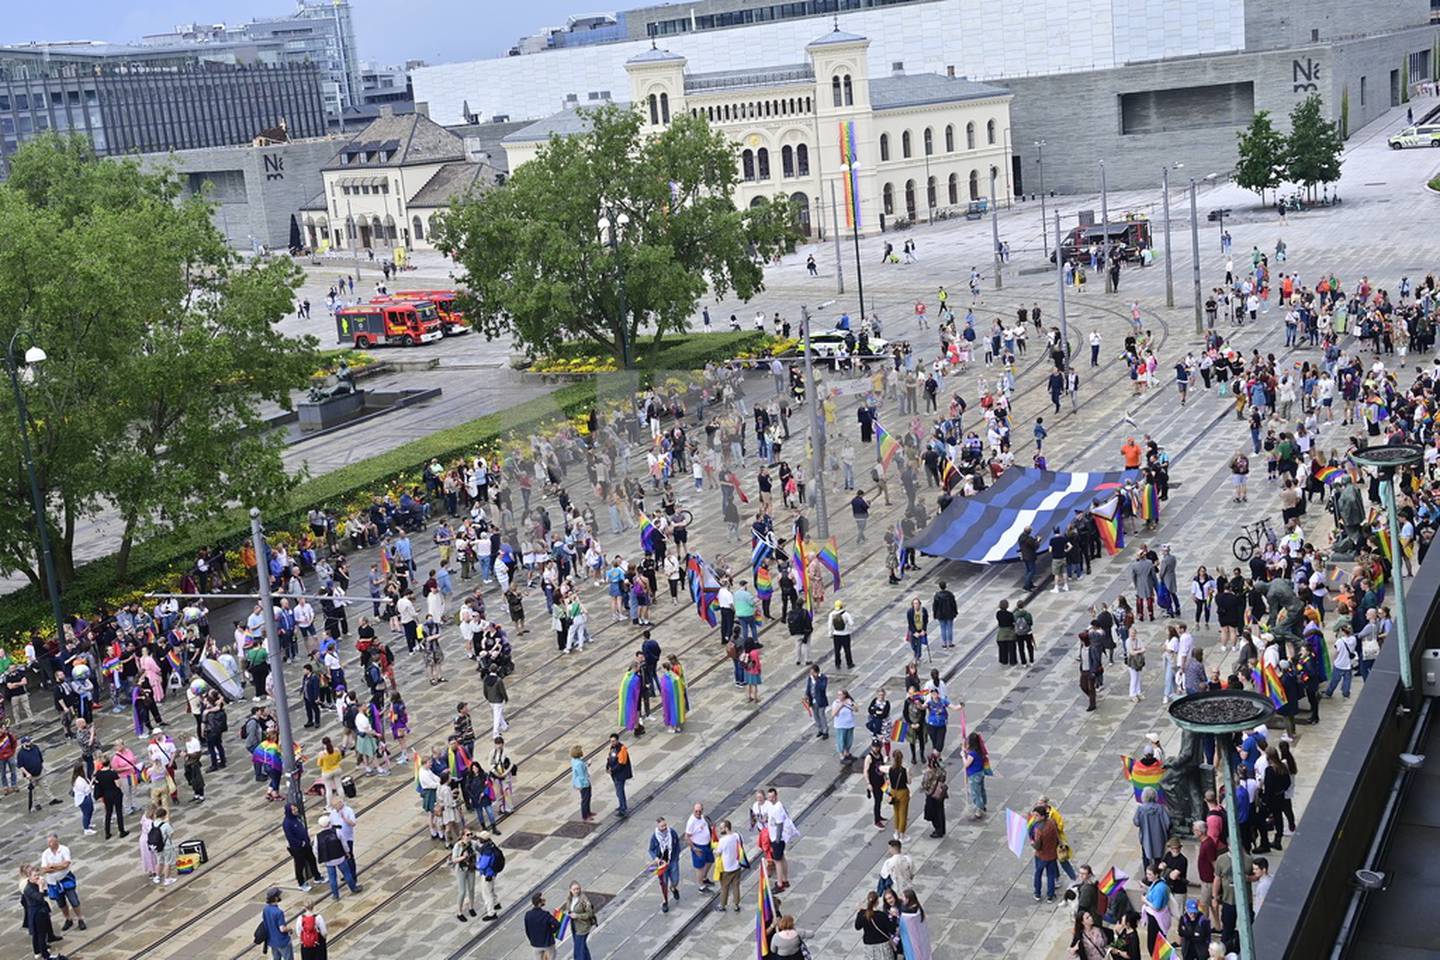 Oslo 20220627. Minnemarkering på Rådhusplassen etter terrorangrepet i Oslo natt til lørdag. På grunn av en uavklart trusselsituasjon gikk politiet tidligere på dagen ut med en anbefaling om at pride-arrangement i Oslo avlyses da de ikke kan garantere for sikkerheten.